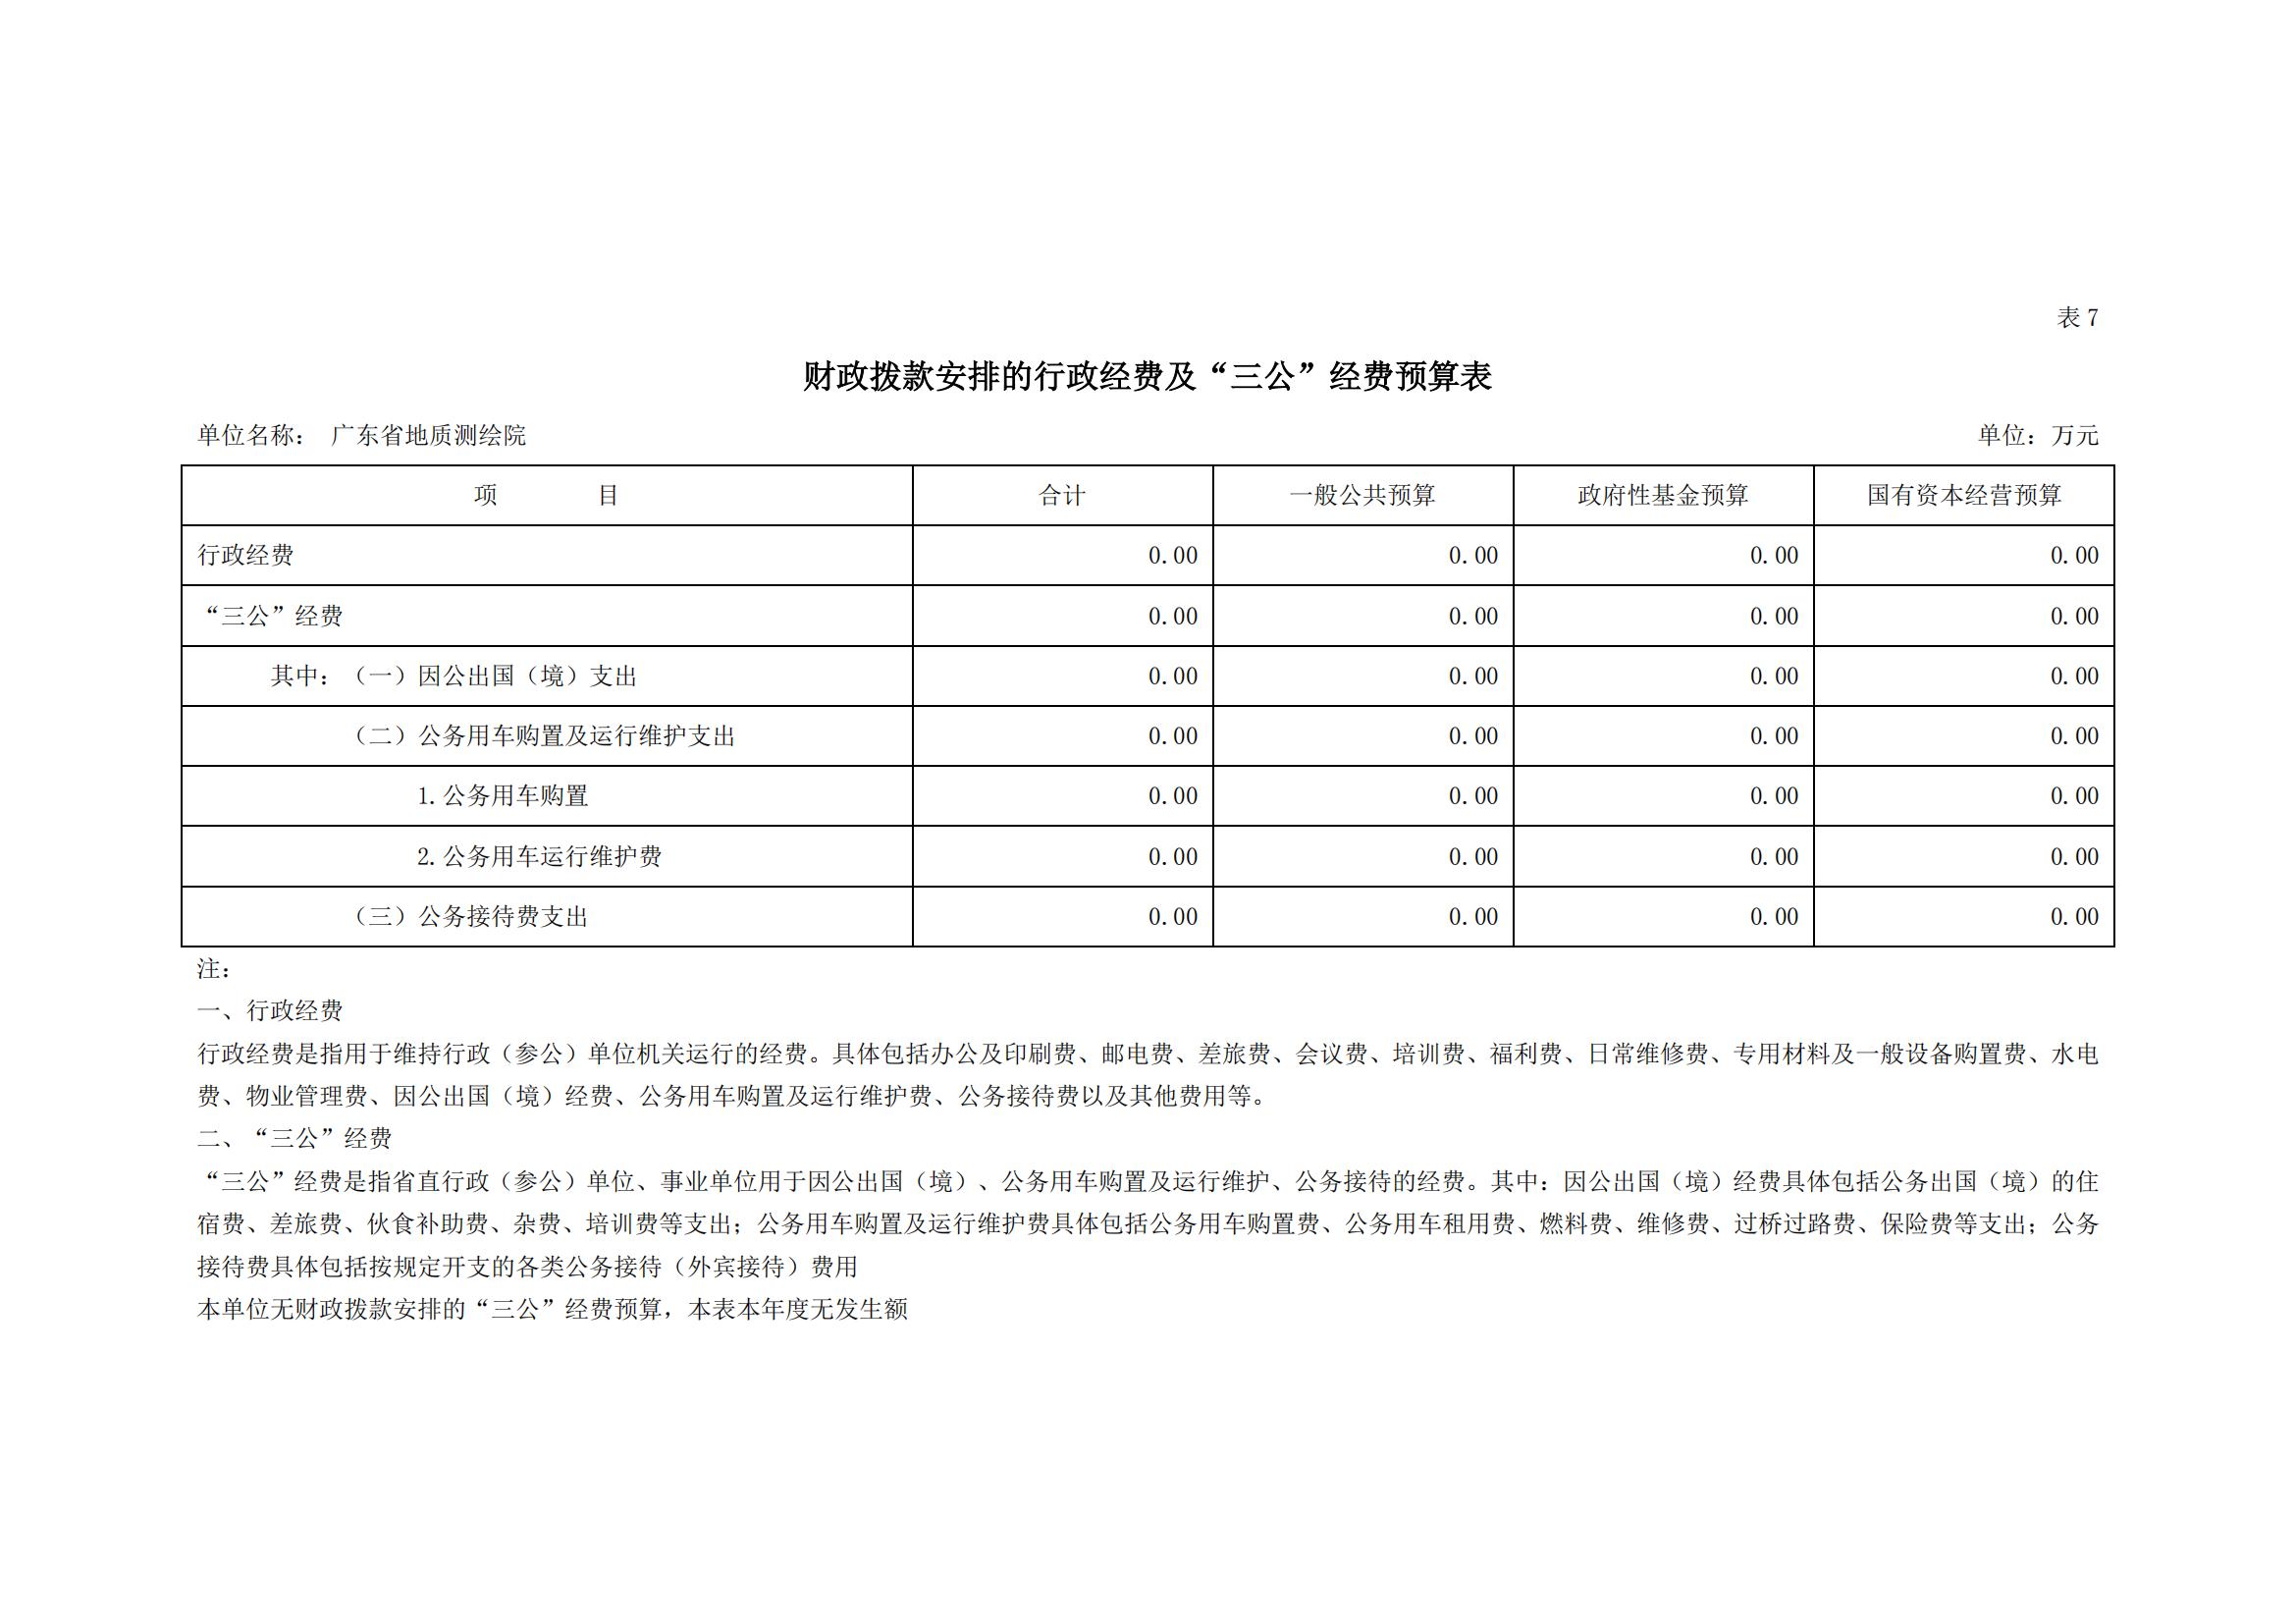 2021年广东省地质测绘院部门预算公开_13.jpg